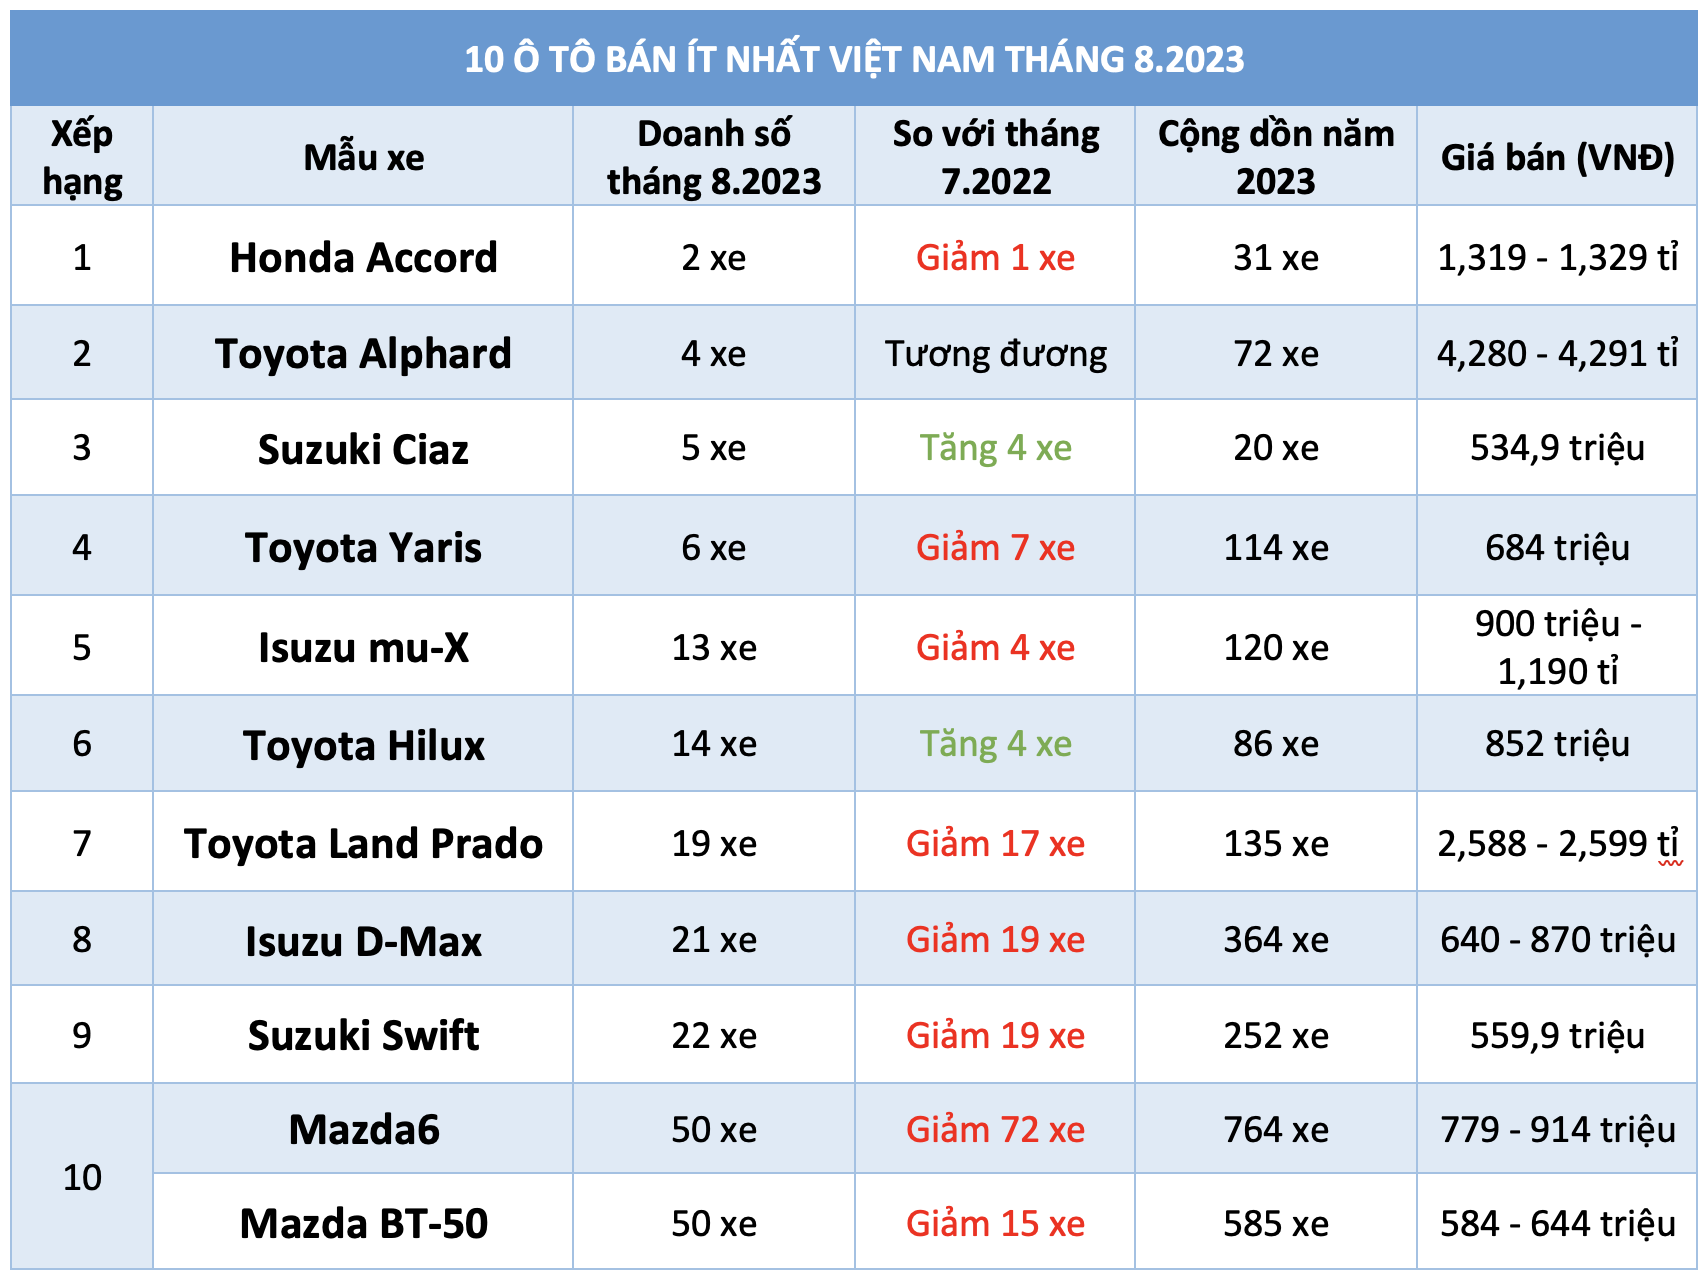 10 ô tô bán ít nhất Việt Nam tháng 8.2023: Honda Accord dẫn đầu